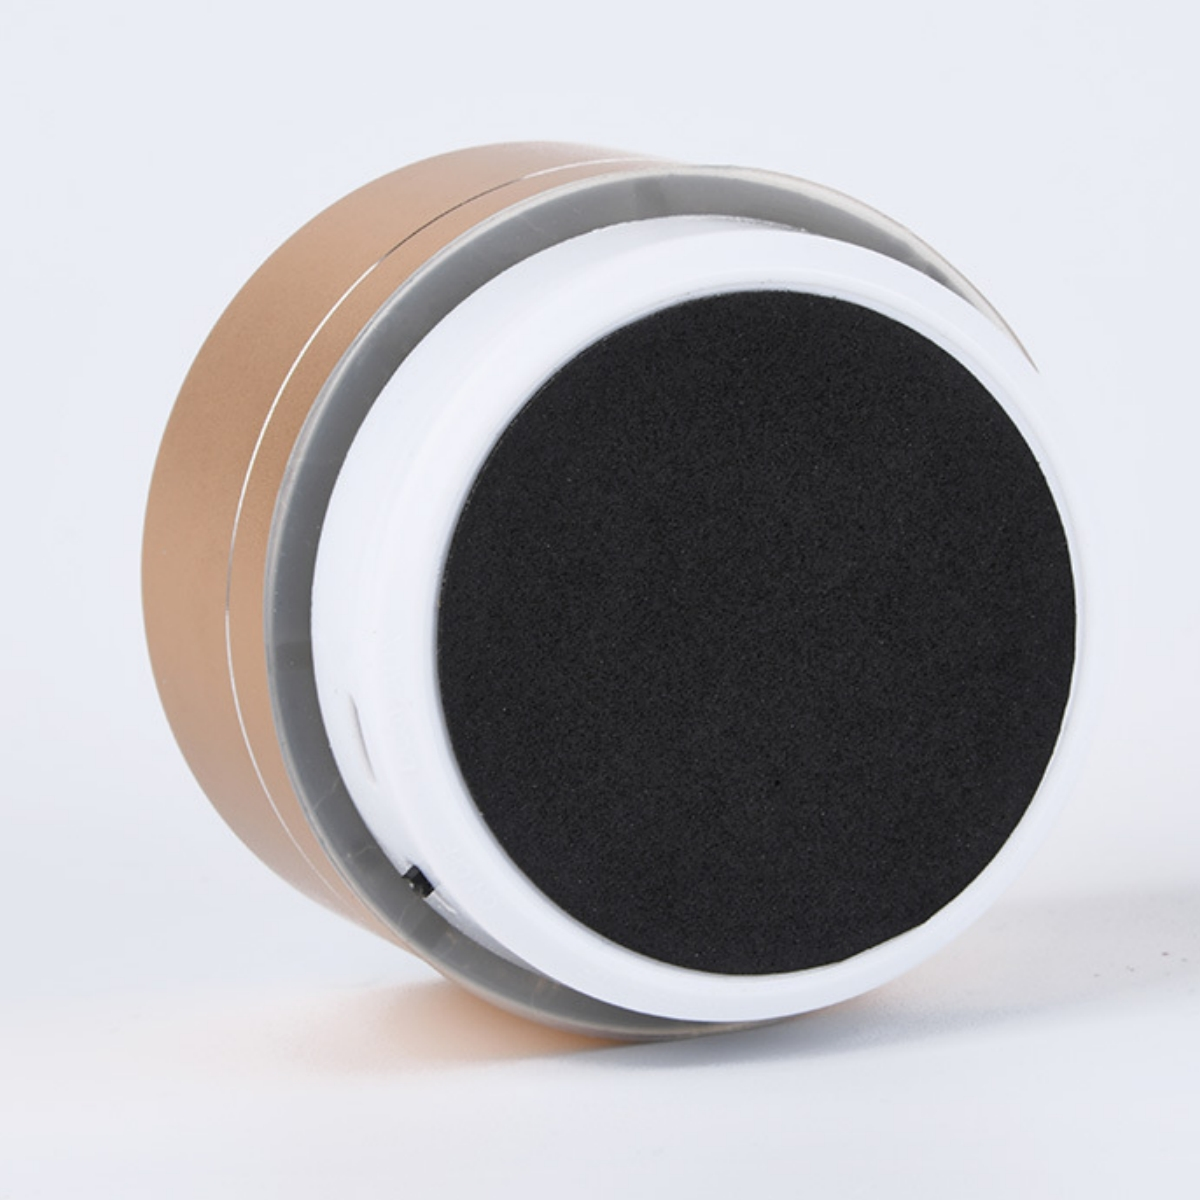 Tragbar Hochwertig 360° Rosa Lautsprecher, Surround-Sound Bluetooth SHAOKE Bluetooth-Lautsprecher - Kompakt